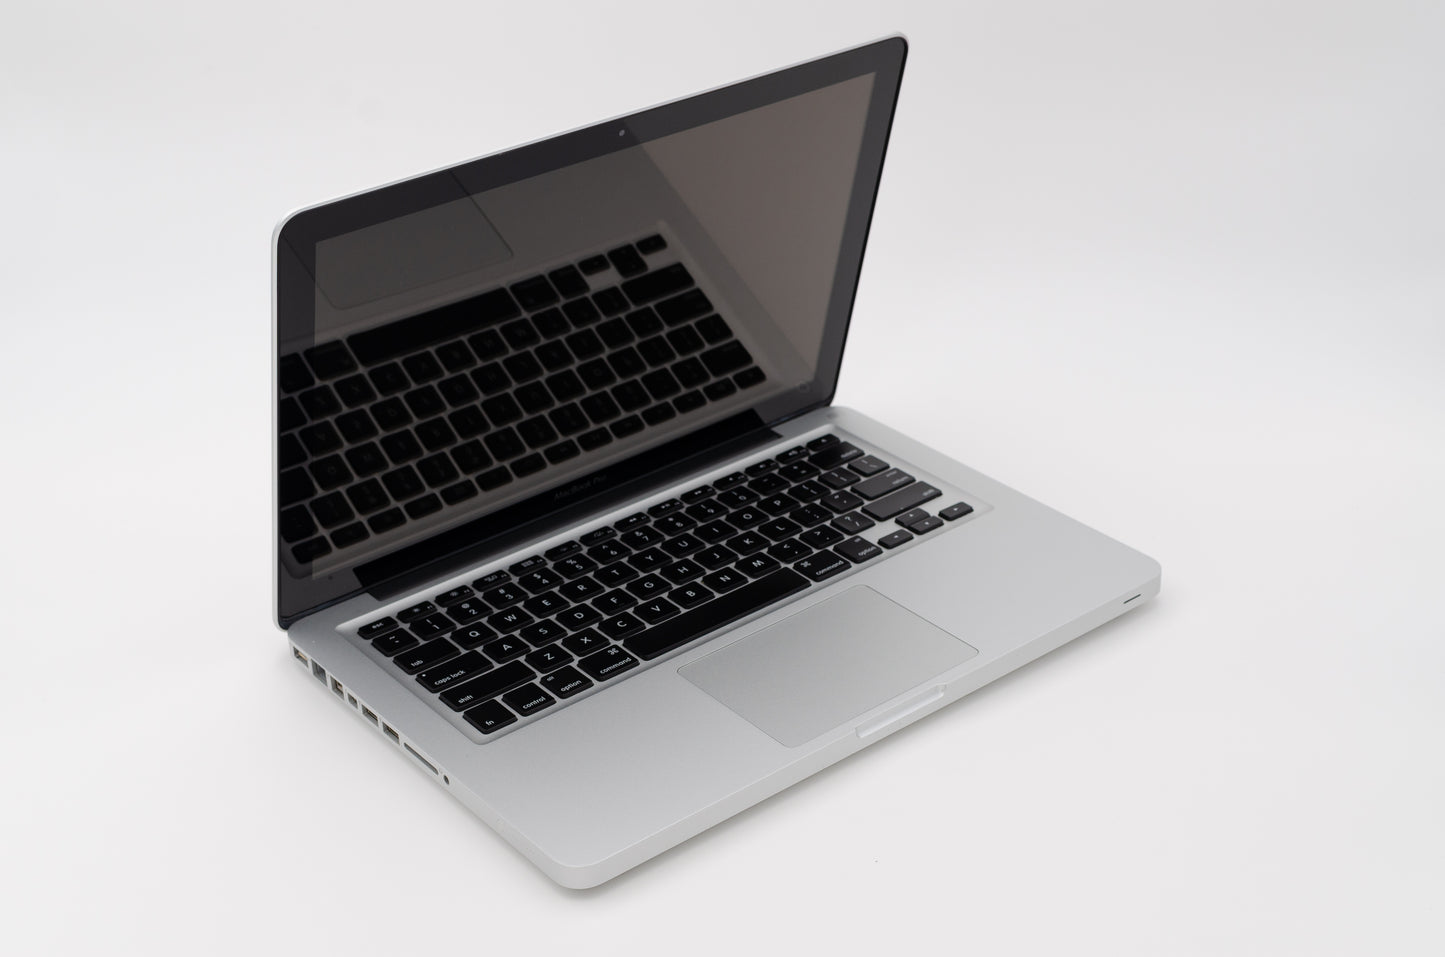 apple-mid-2009-13.3-inch-macbook-pro-a1278-aluminum-c2d - 2.53ghz processor, 4gb ram, 940m - 256mb gpu-mb991ll/a-4